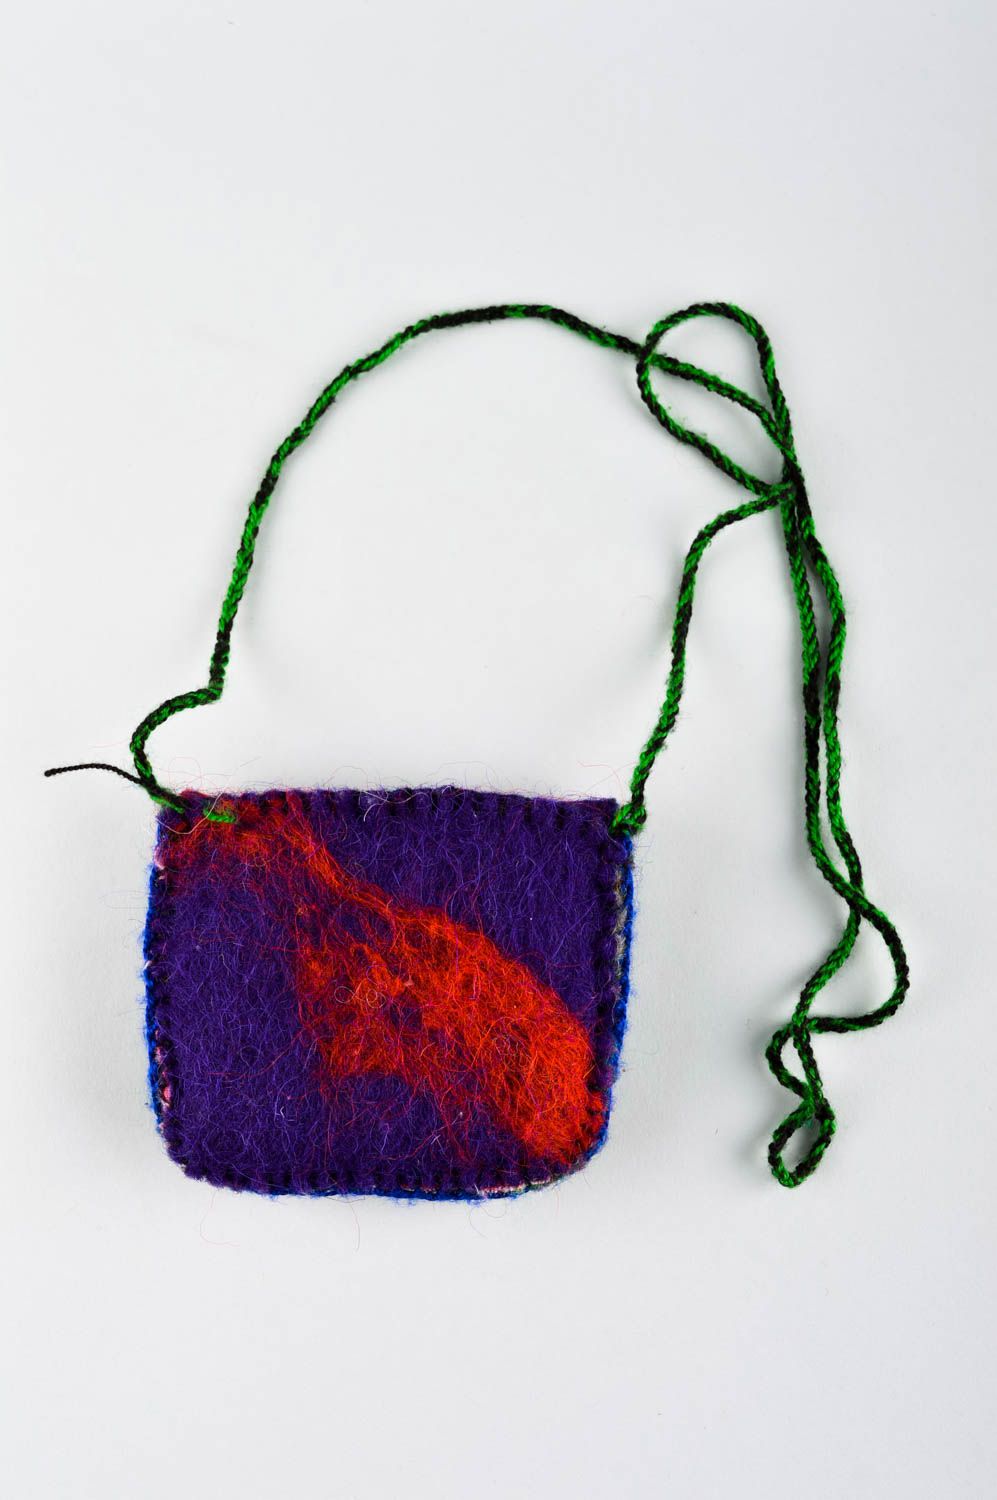 Handmade bag designer handbag unusual bag for girls gift ideas knitted bag photo 3